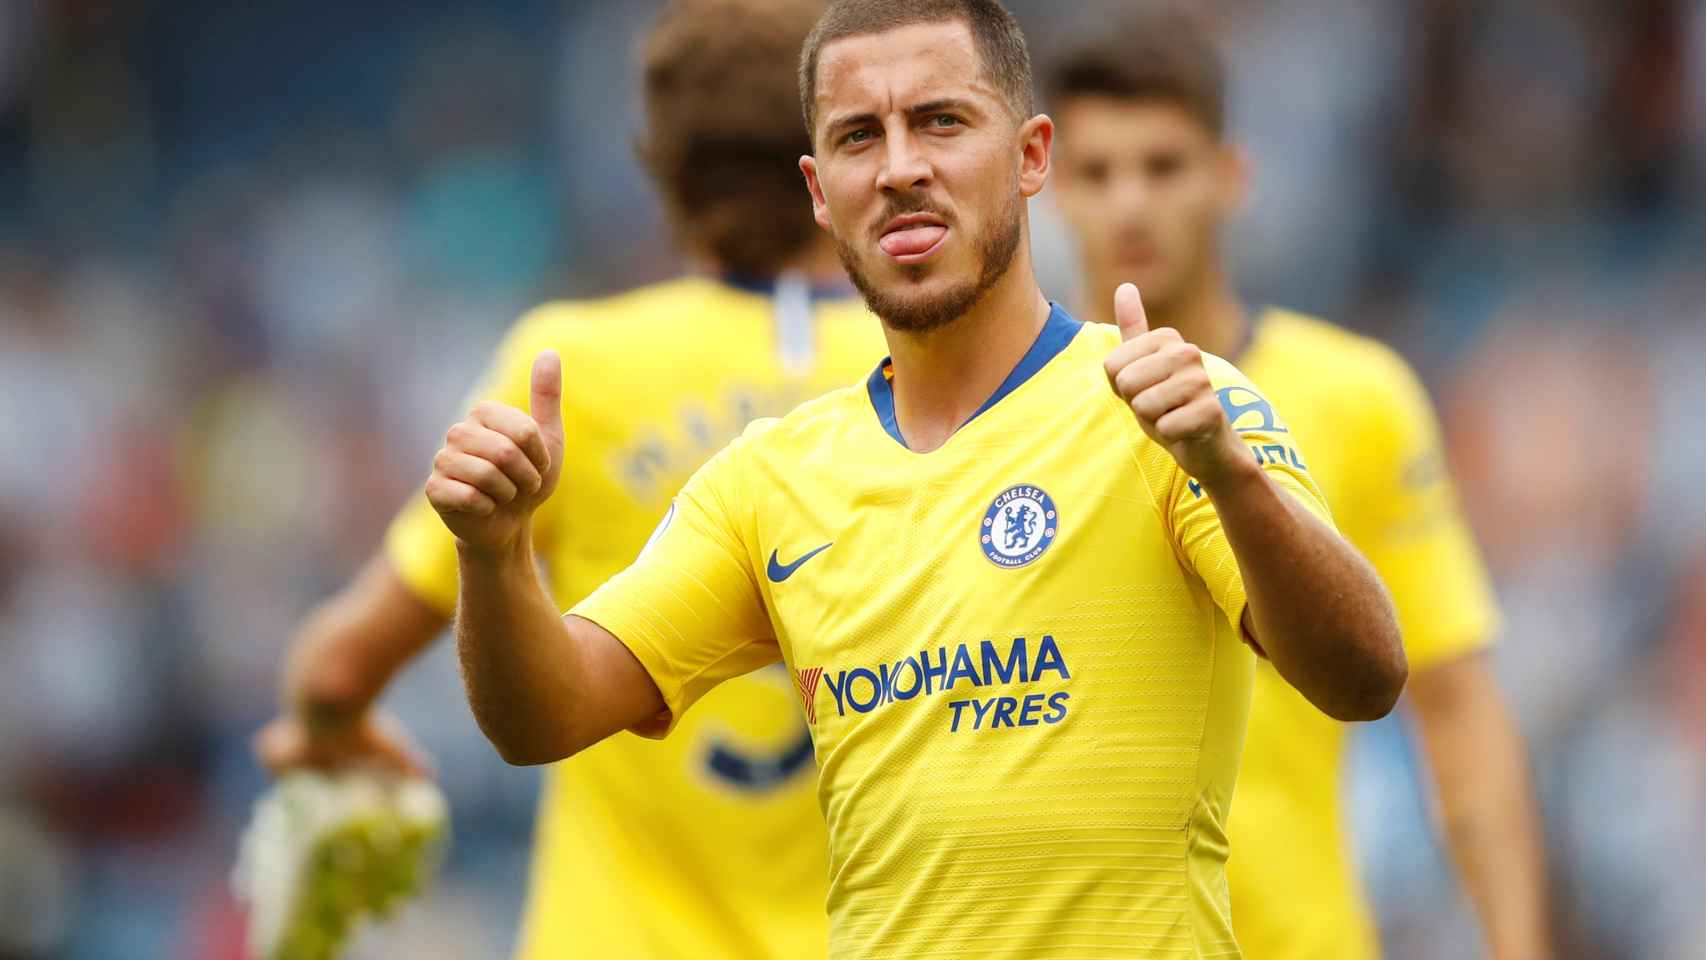 Hazard celebra un gol con el Chelsea